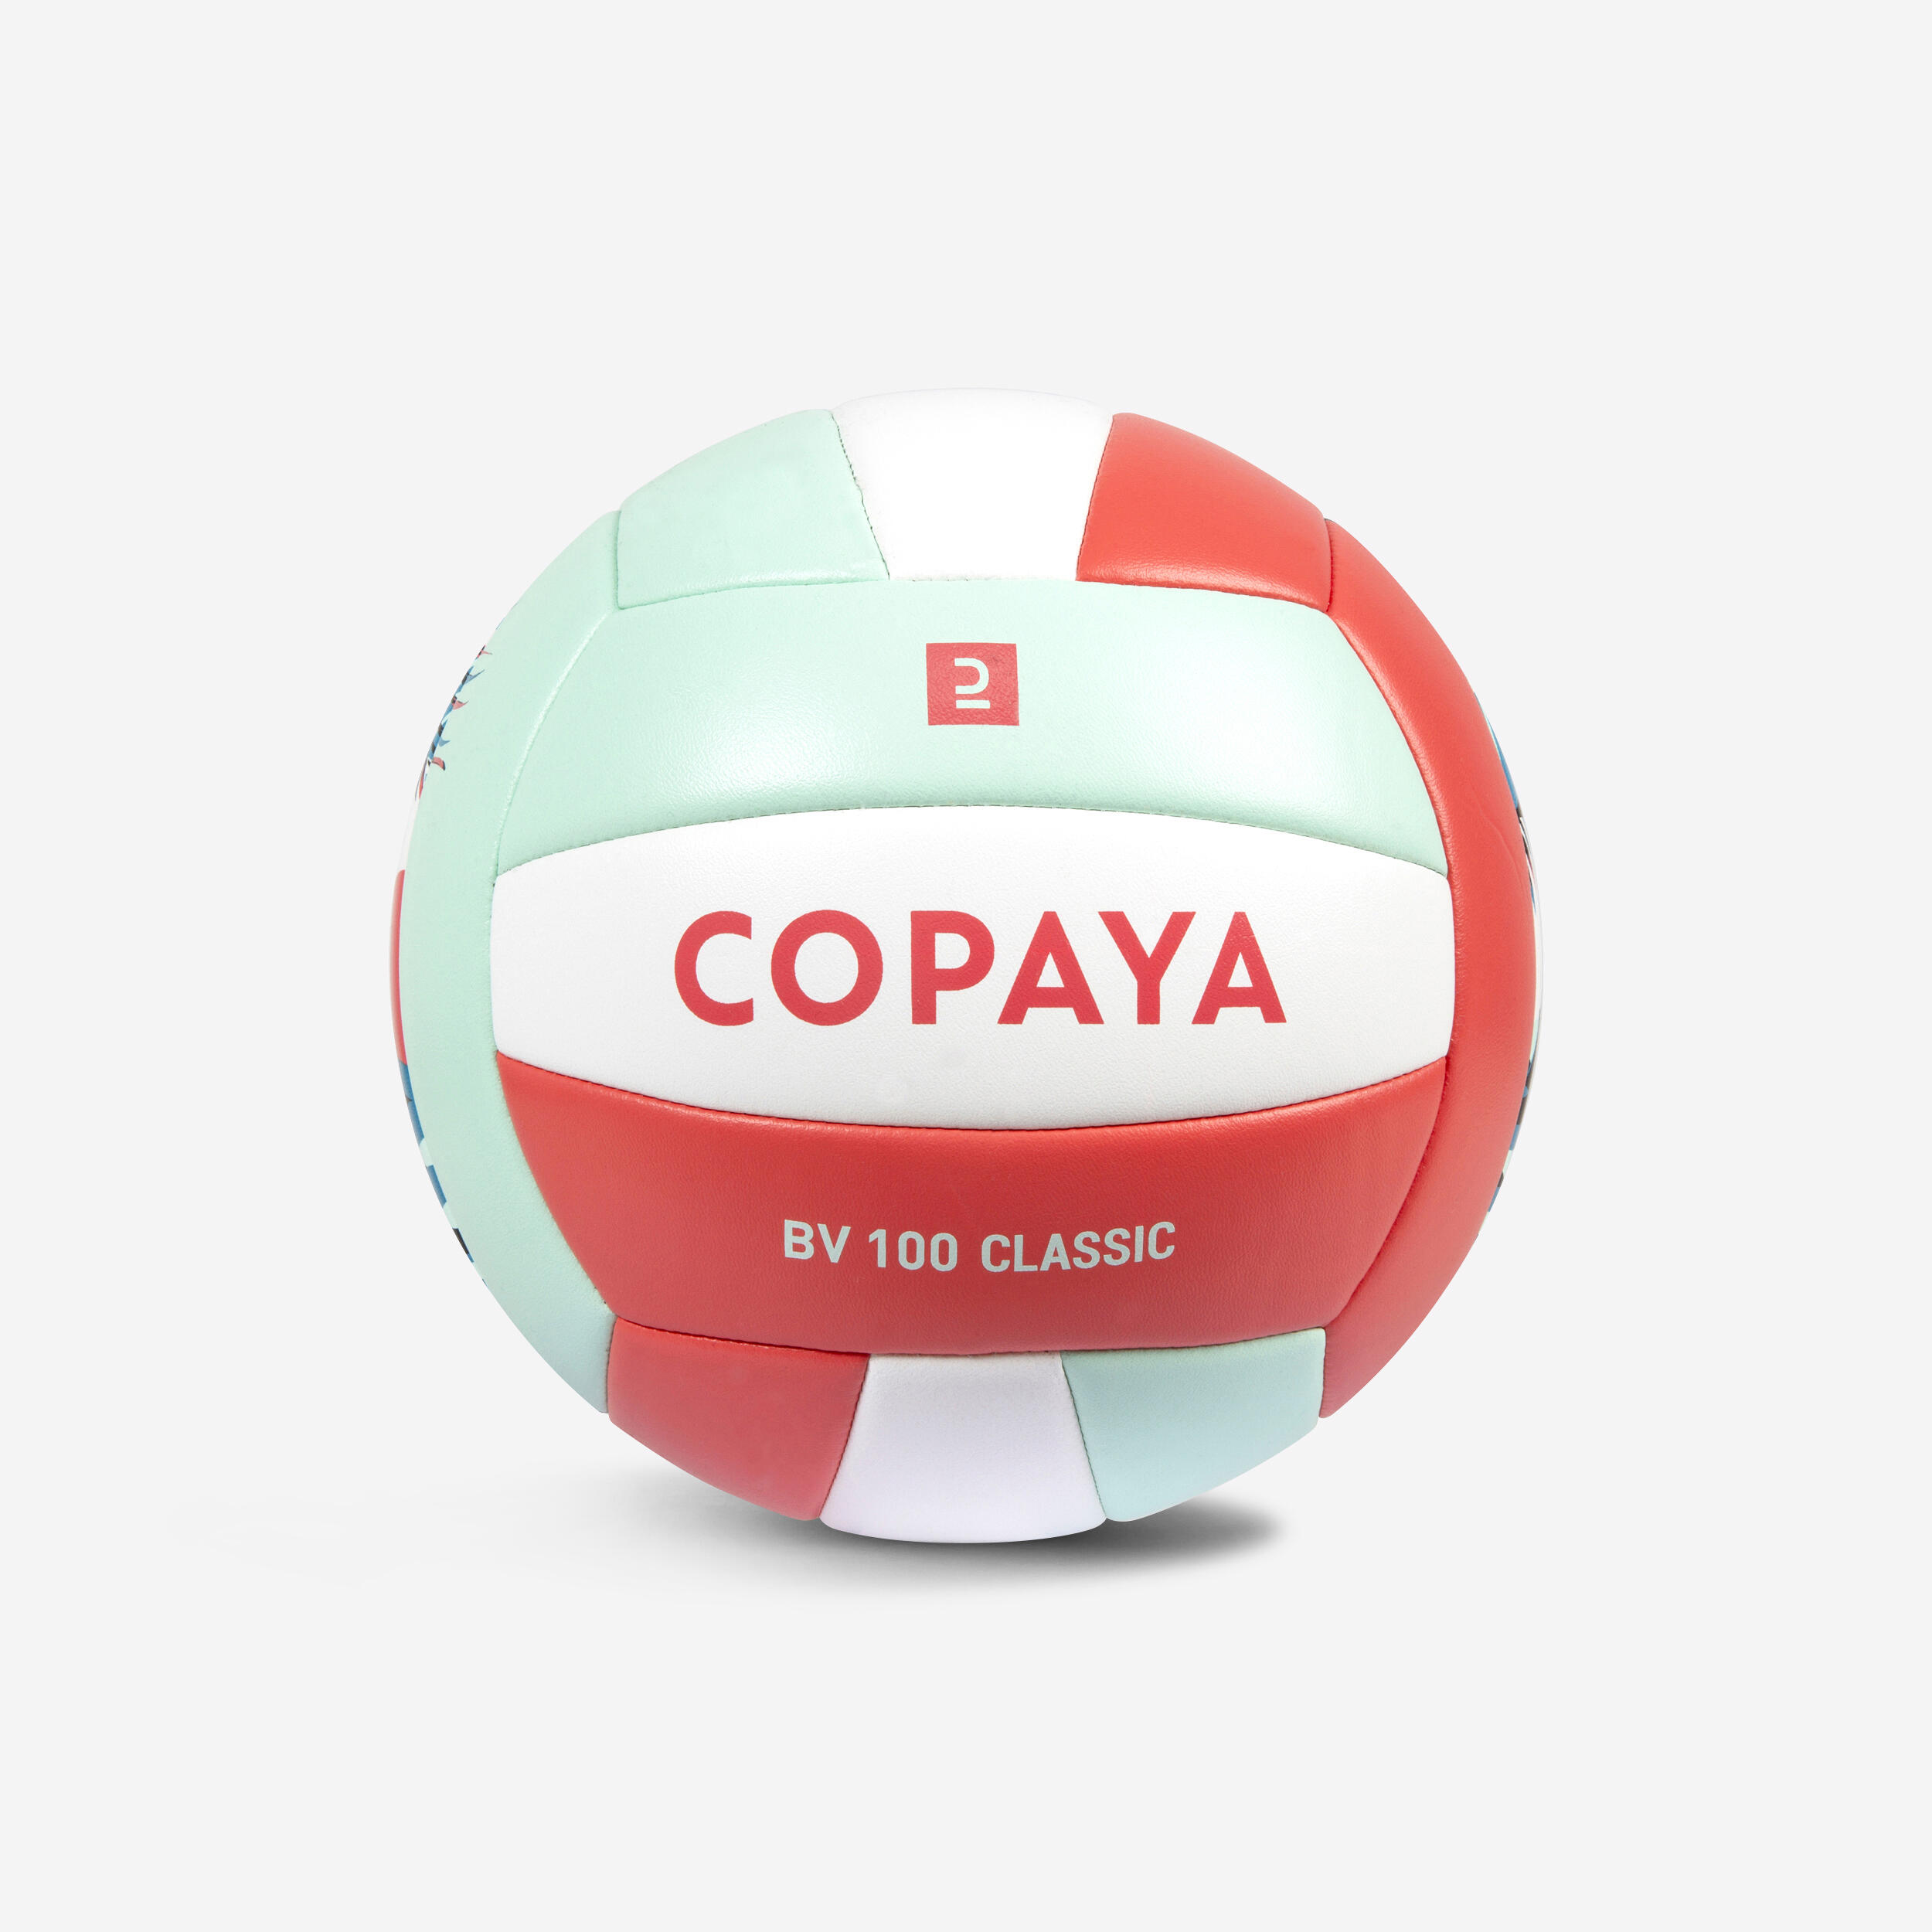 COPAYA Ballon De Beach Volley 100 Classic Cousu Taille 5 Rose Soleil -